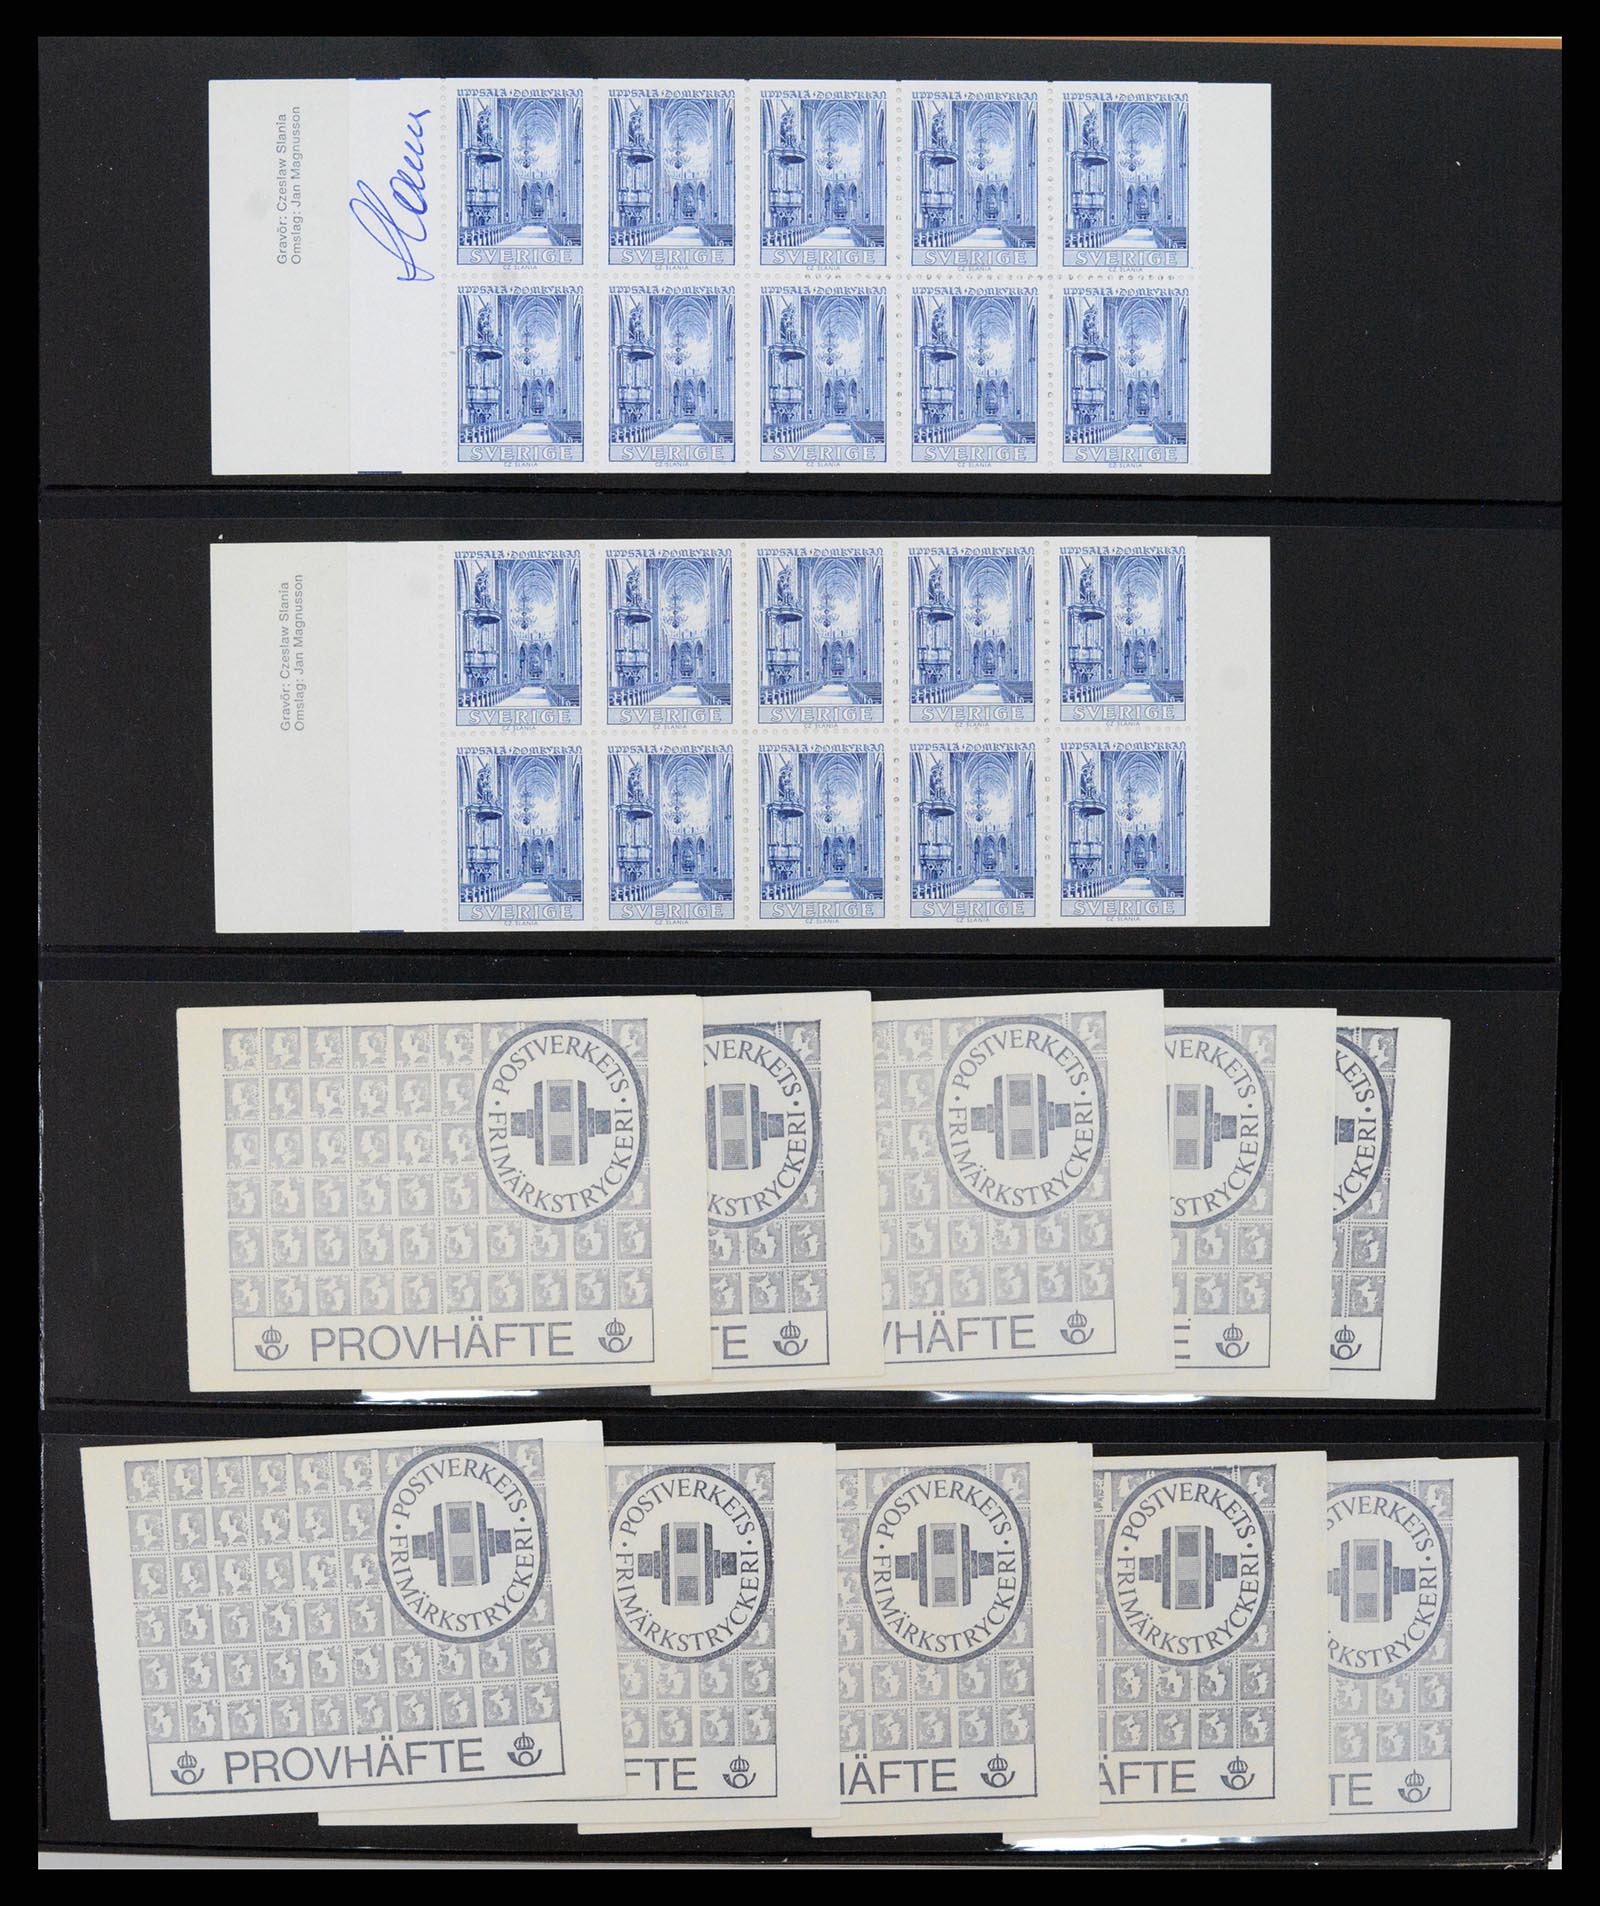 37345 053 - Stamp collection 37345 European countries souvenir sheets.